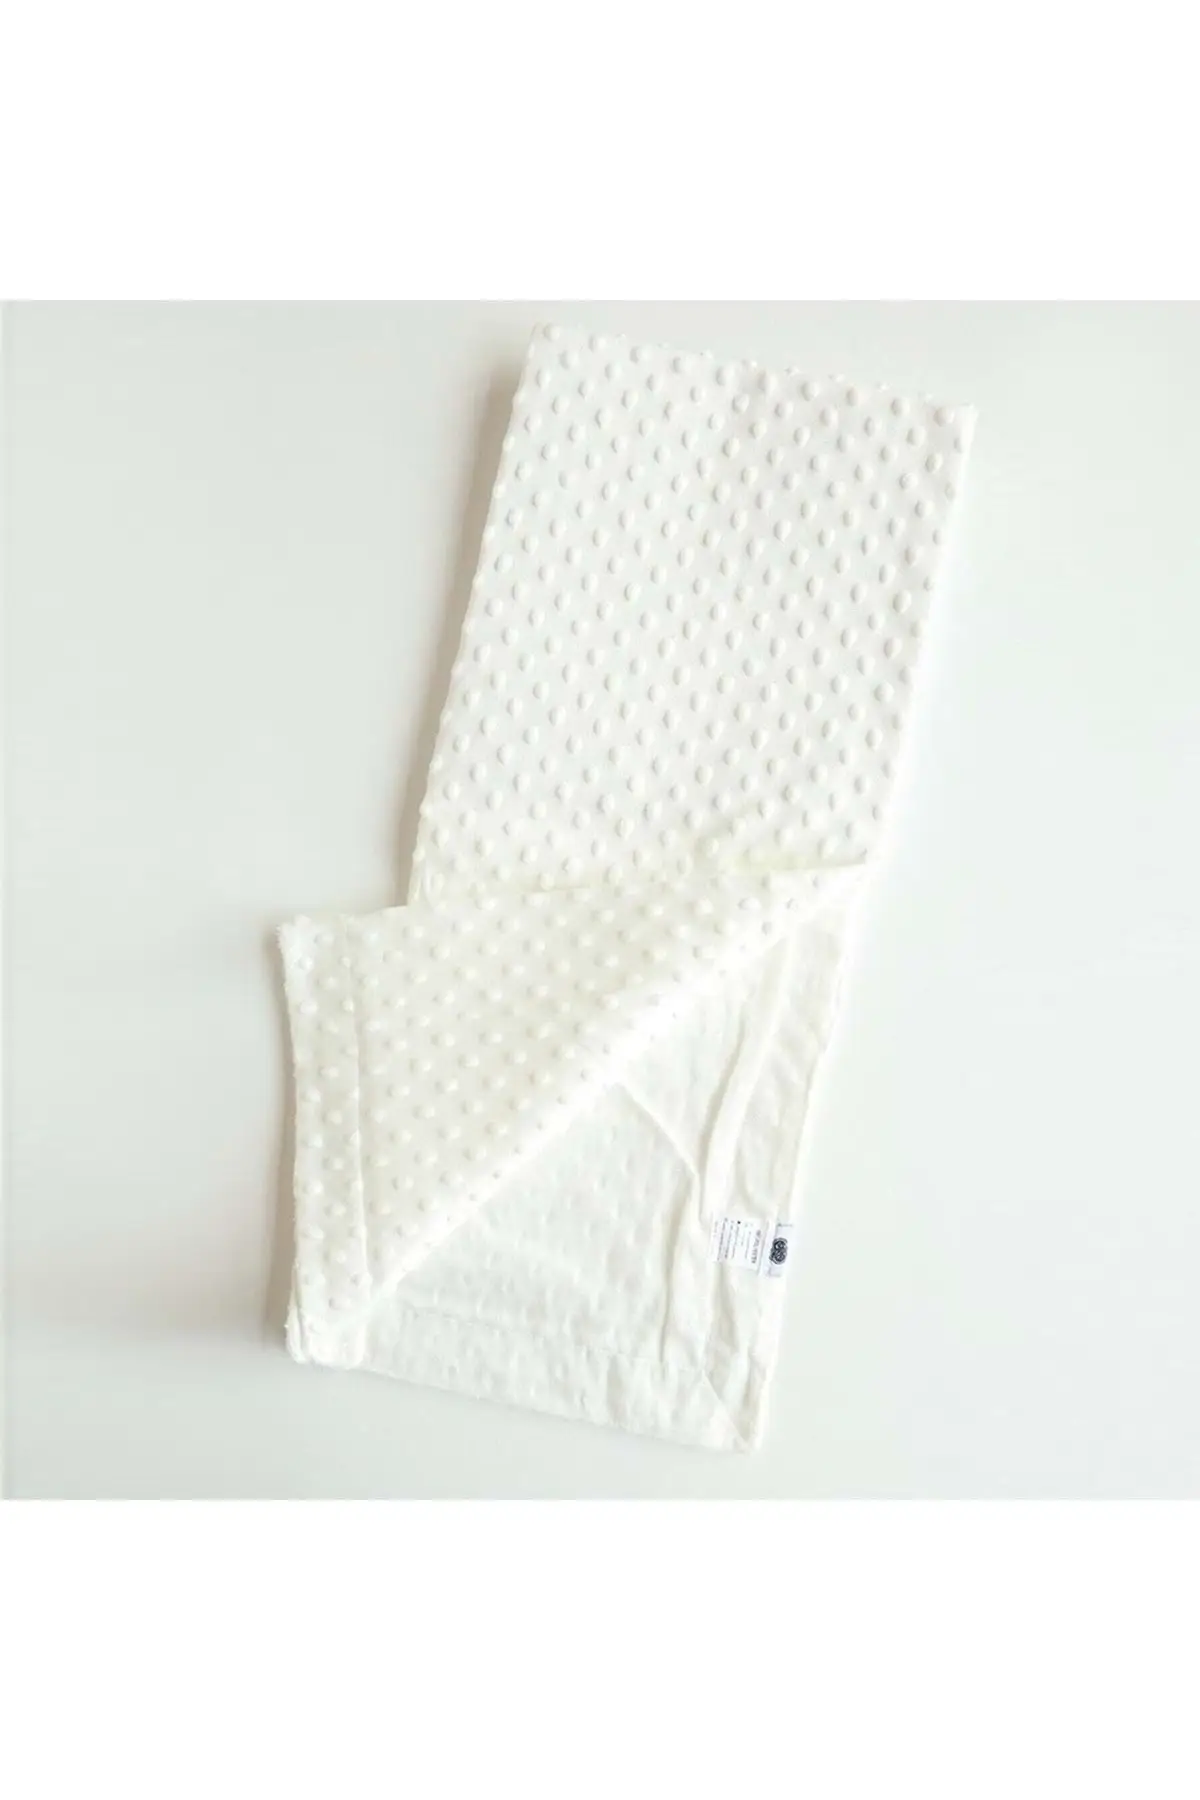 

Boy-girl Baby Chickpeas Blanket Blanket-White Newborn Cotton 80x90 Baby & Kids Home Textile Textile & Furniture